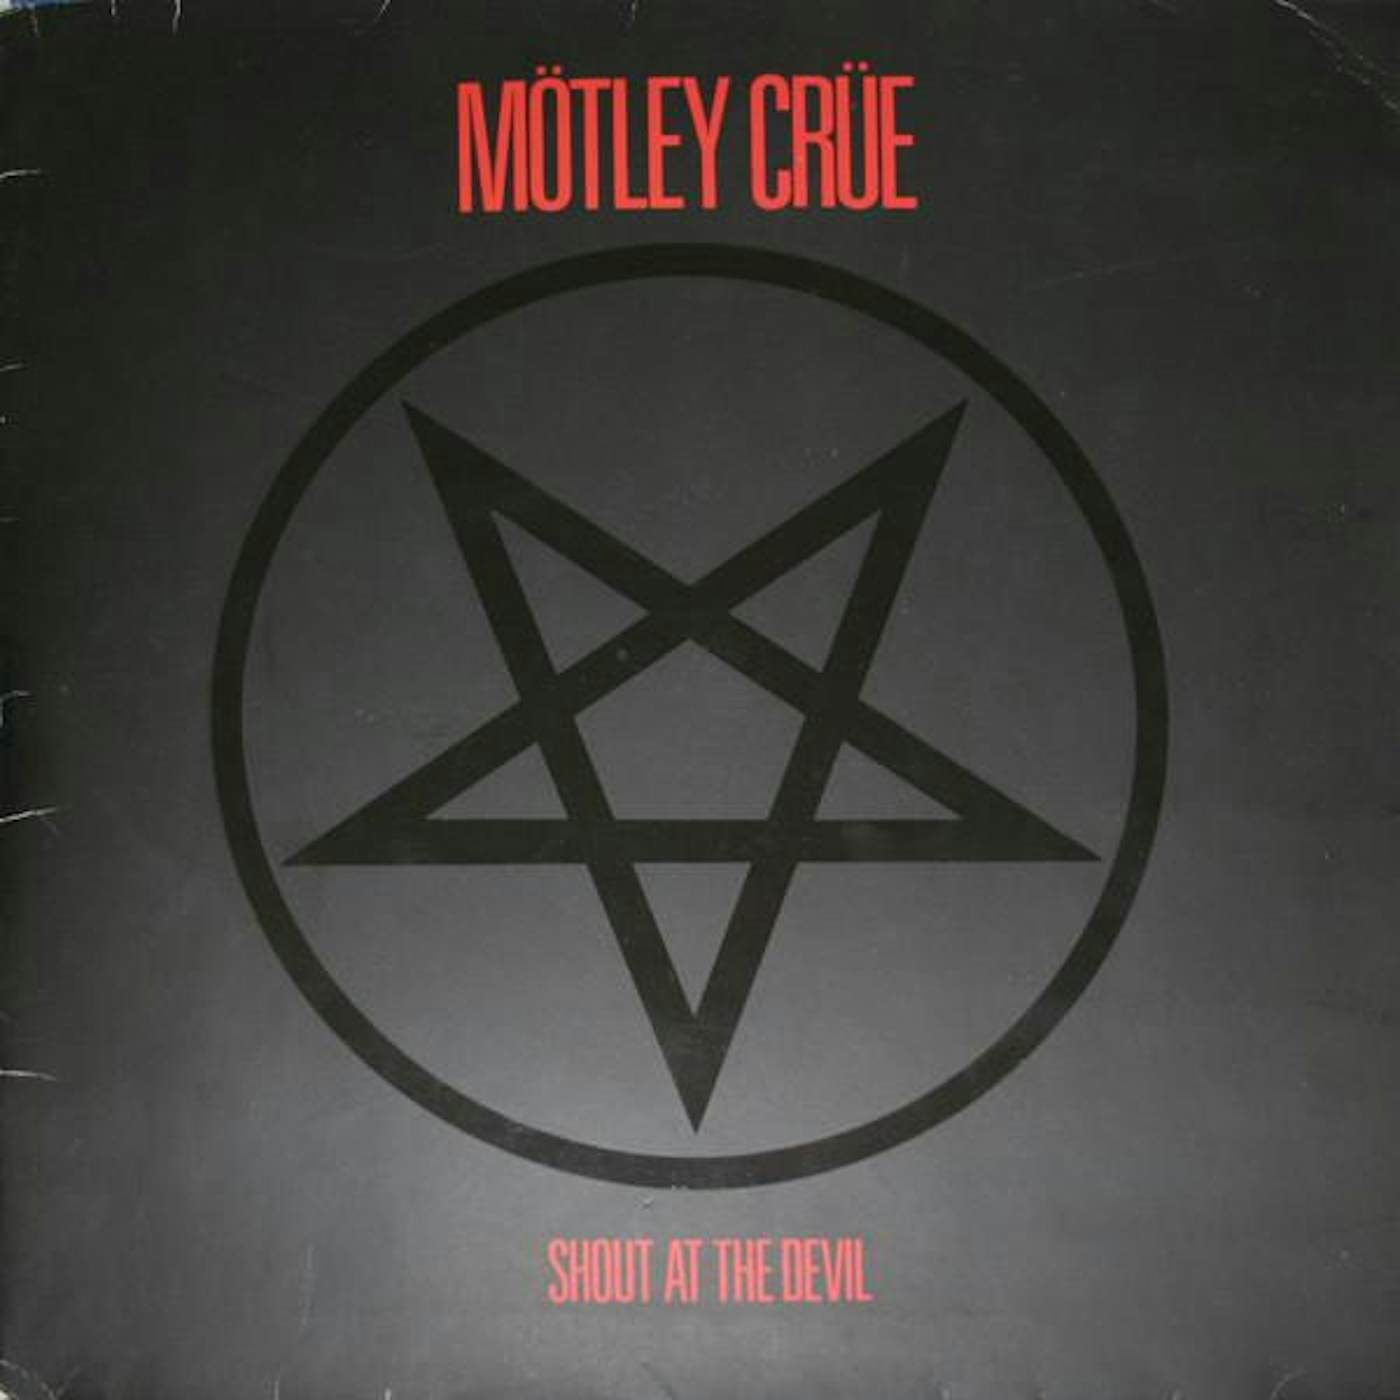 Mötley Crüe SHOUT AT THE DEVIL CD